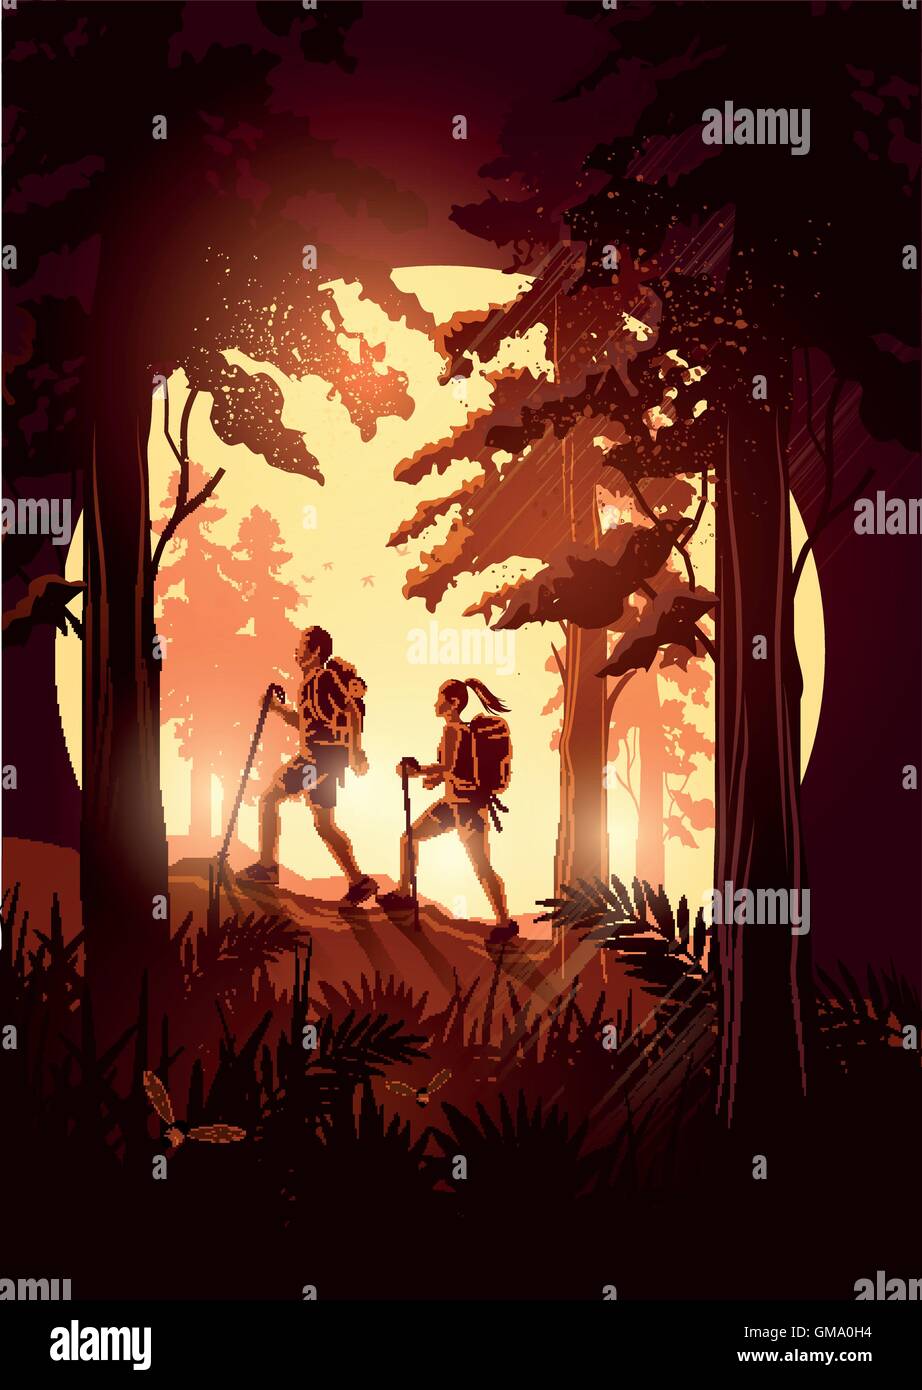 Ein paar Leute mit Rucksäcken Wandern durch einen malerischen Wald. Vektor-illustration Stock Vektor